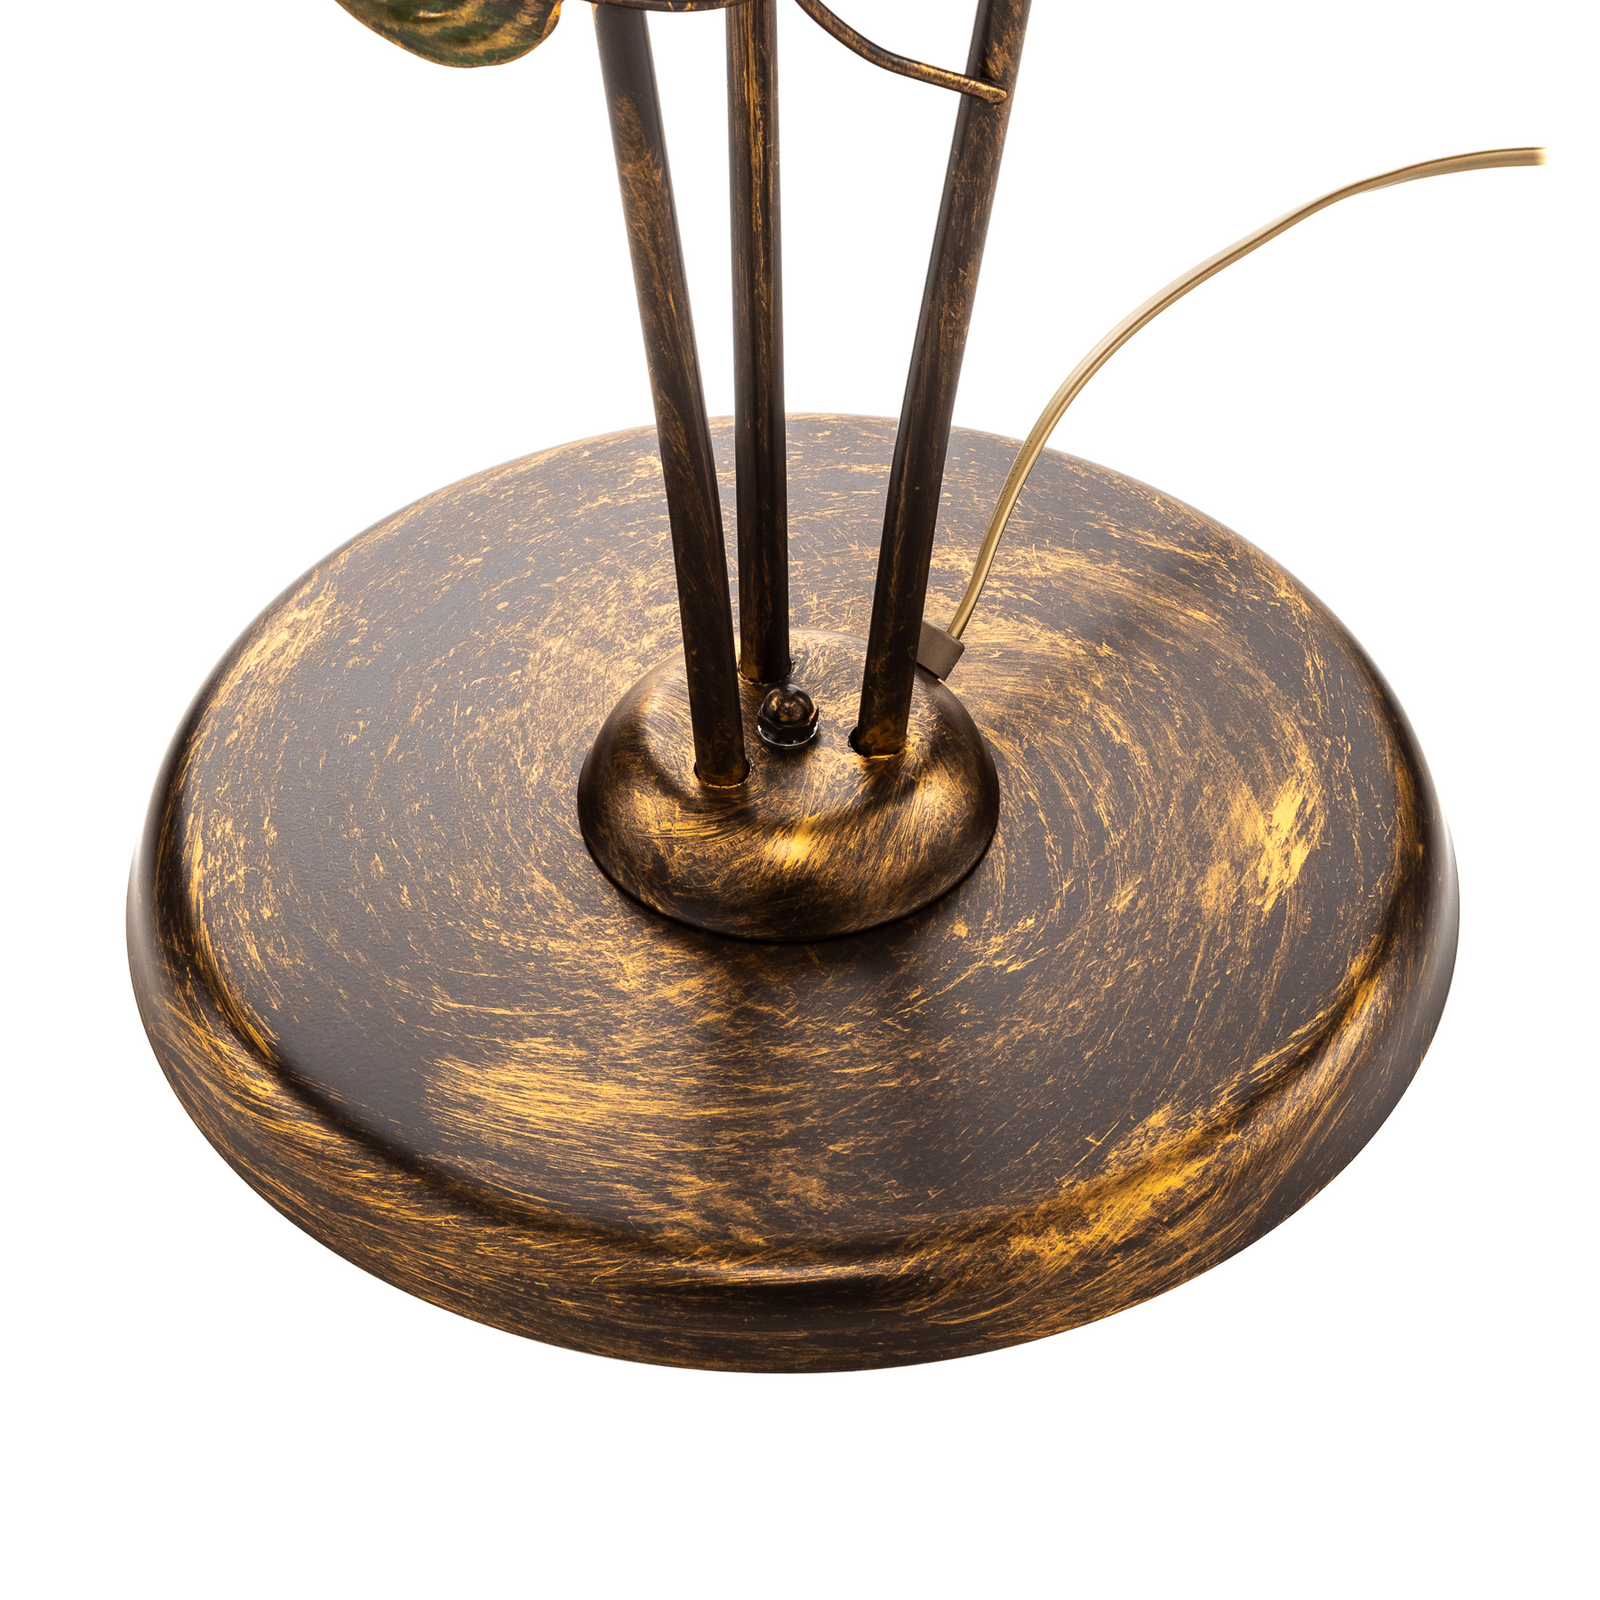 Miranda álló lámpa, firenzei stílusú, bronz